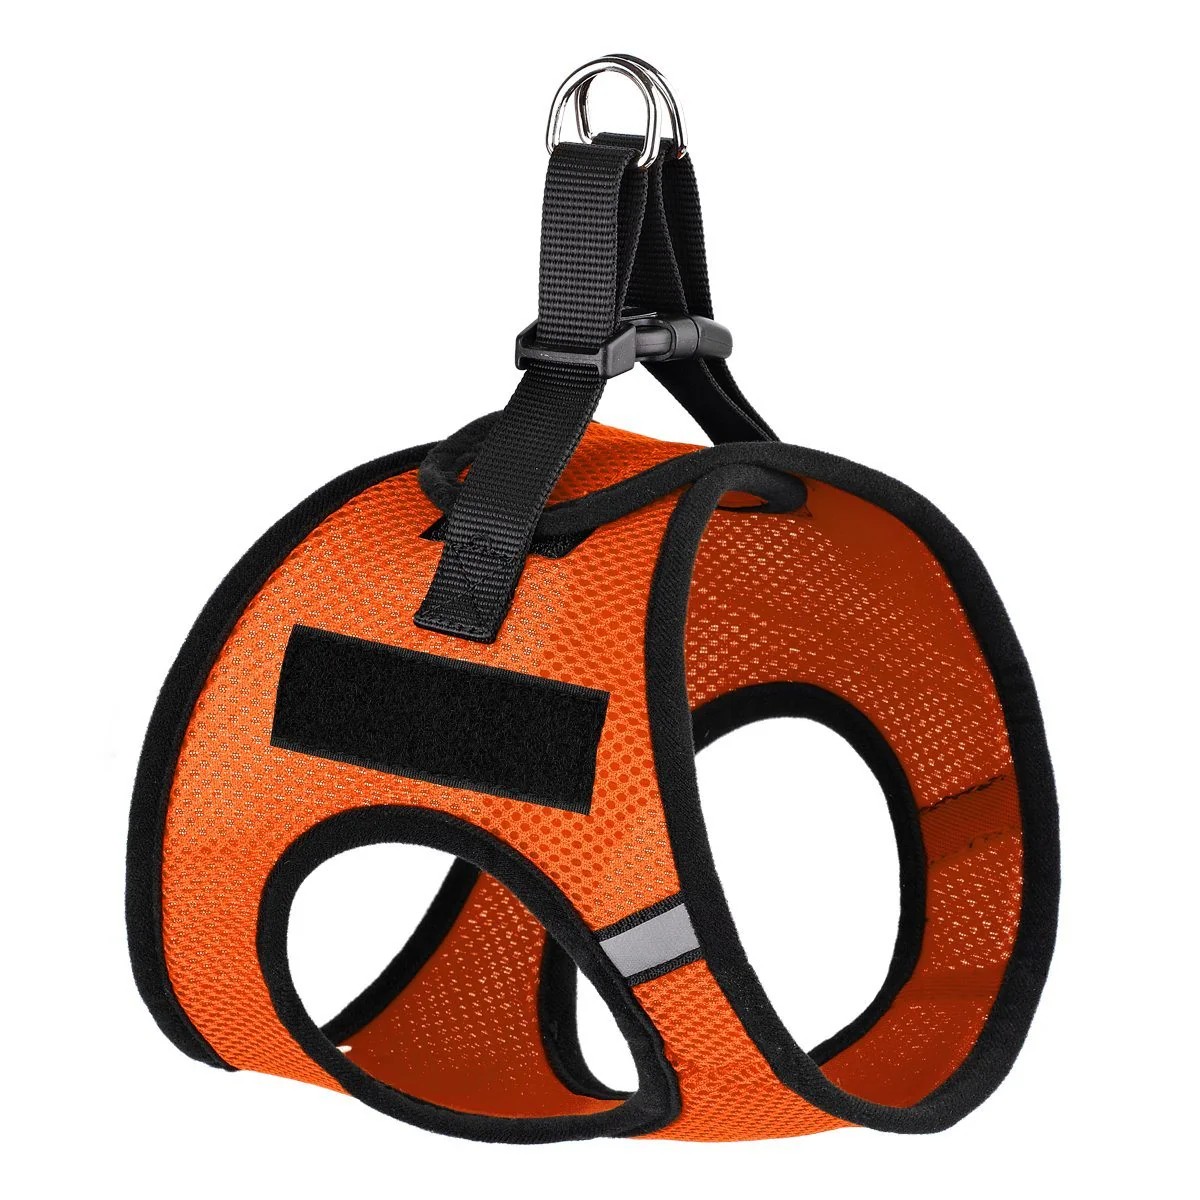 York Mesh Dog Harness + Built-in Hook & Loop Fastener - Orange